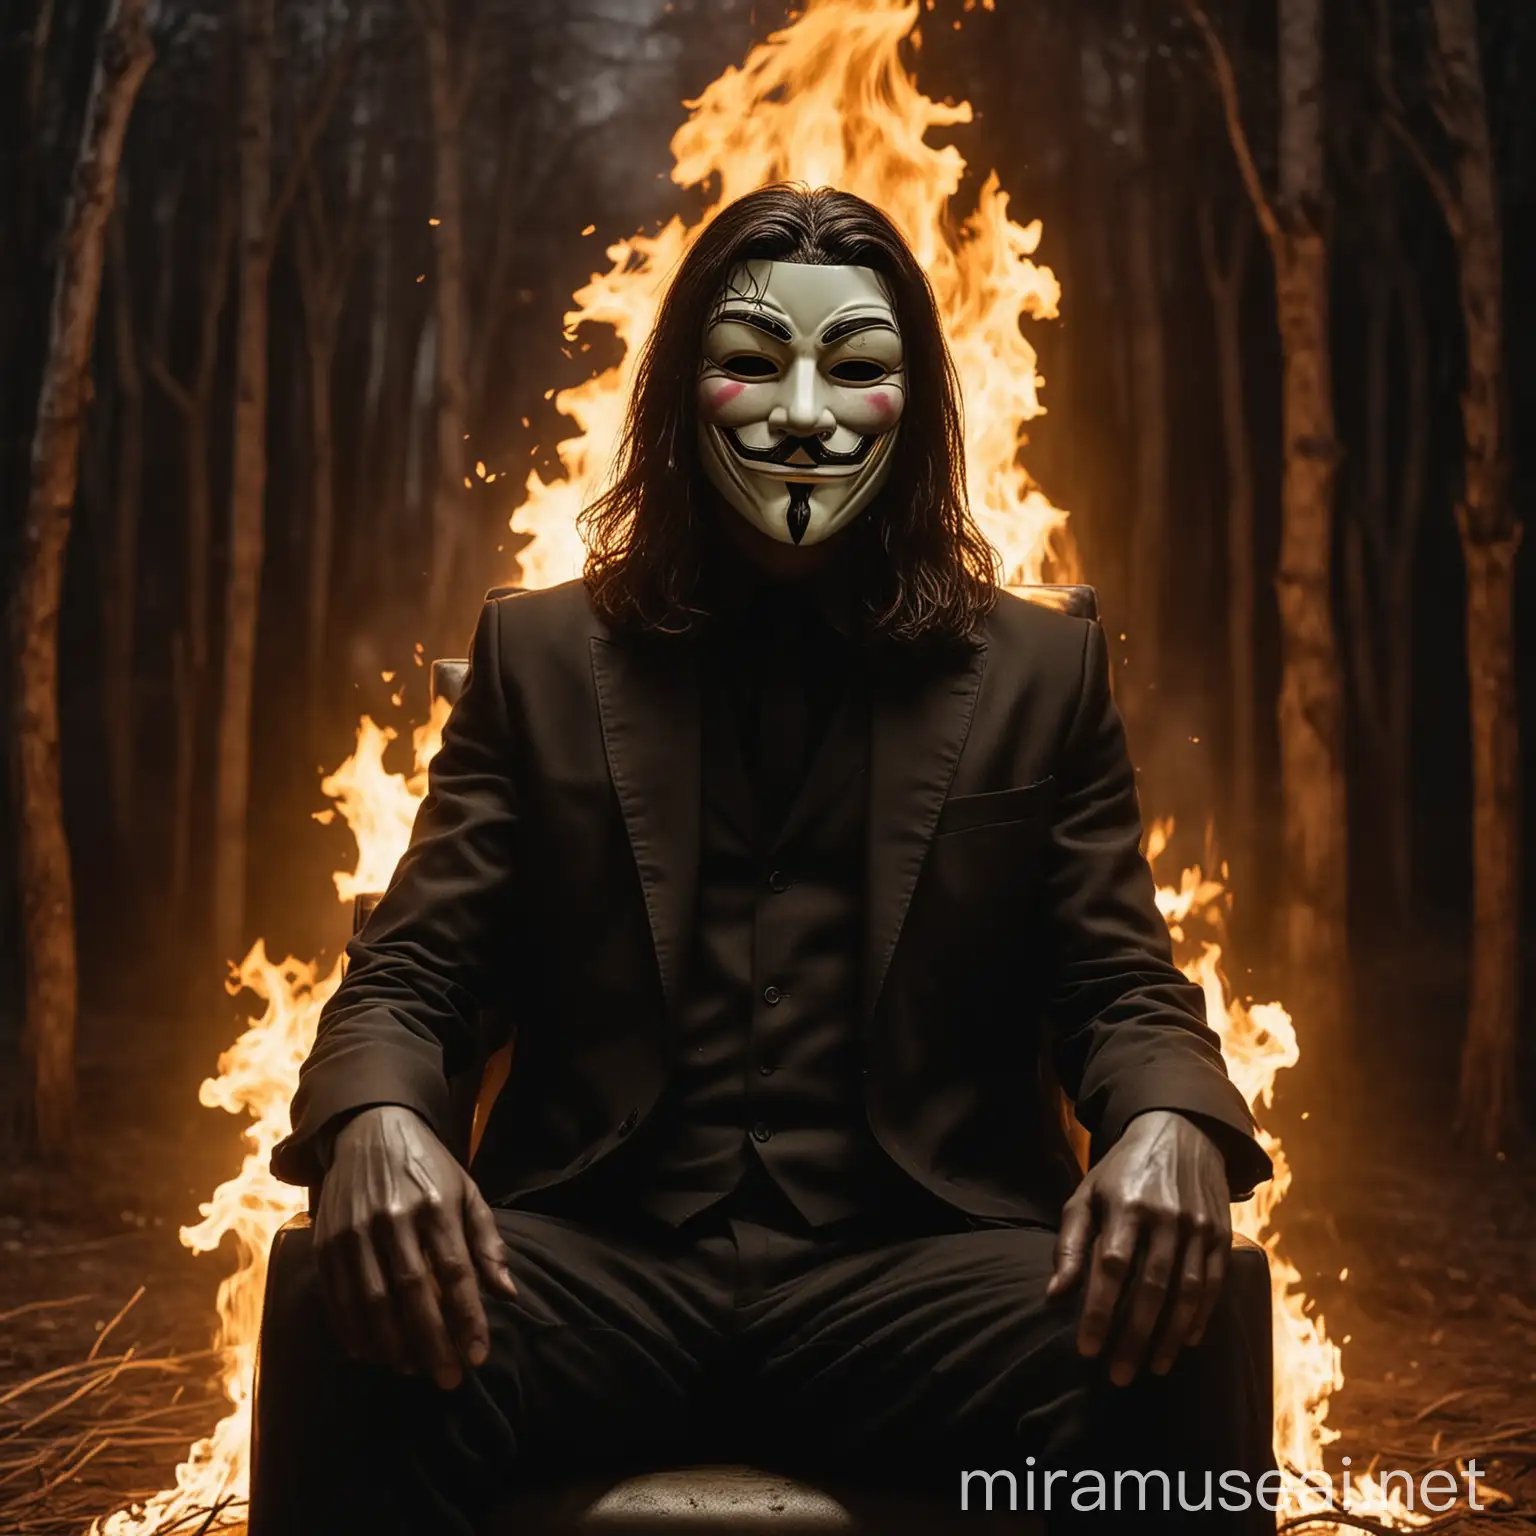 Um homem sentado em uma poltrona usando uma máscara anônima (V de Vingança) com cabelos longos e um terno de seda escura. Ao seu redor há chamas e ao fundo uma floresta queimando com uma luz suave.